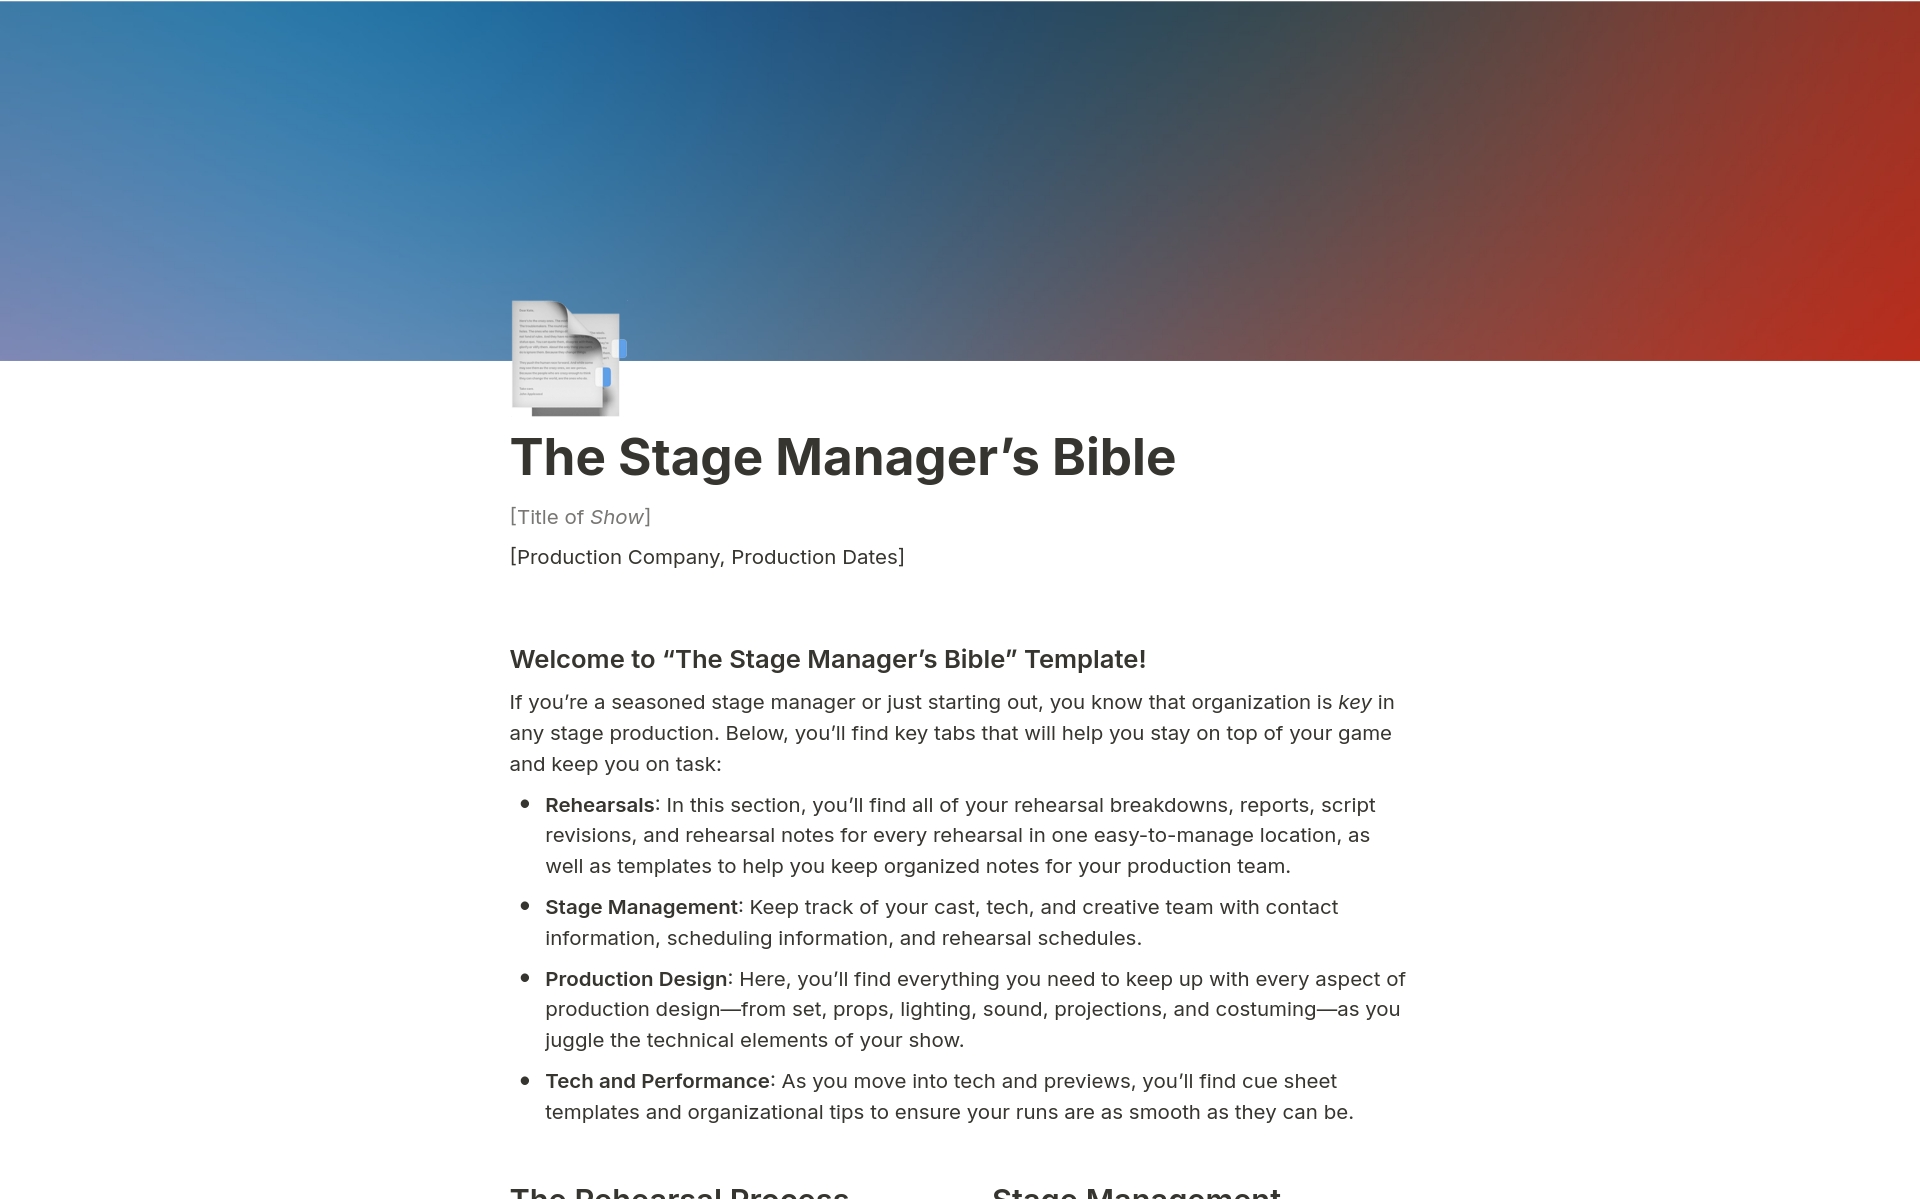 Vista previa de plantilla para The Stage Manager's Bible